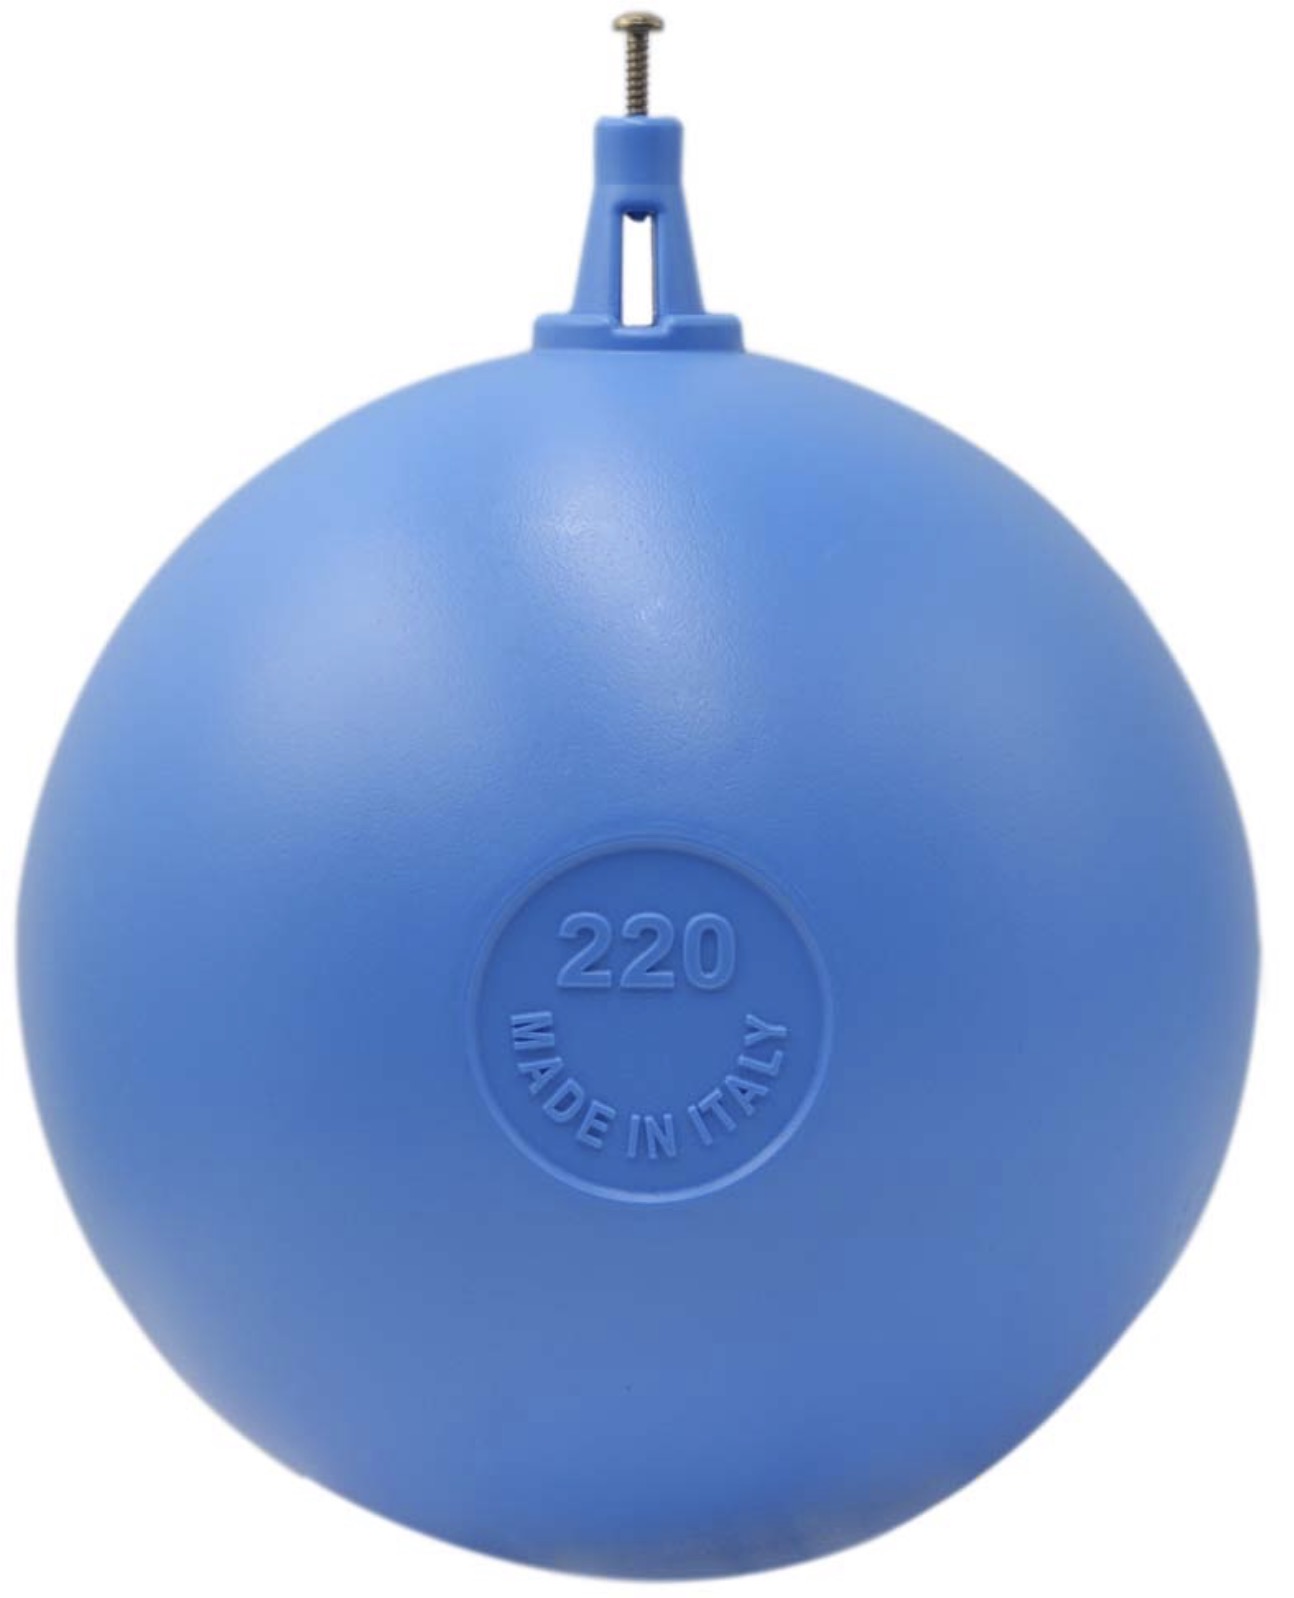 Отзывы шар пластиковый F.A.R.G. 120 мм с ползунковым креплением для клапана 511/2.3/4 (532120) в Украине